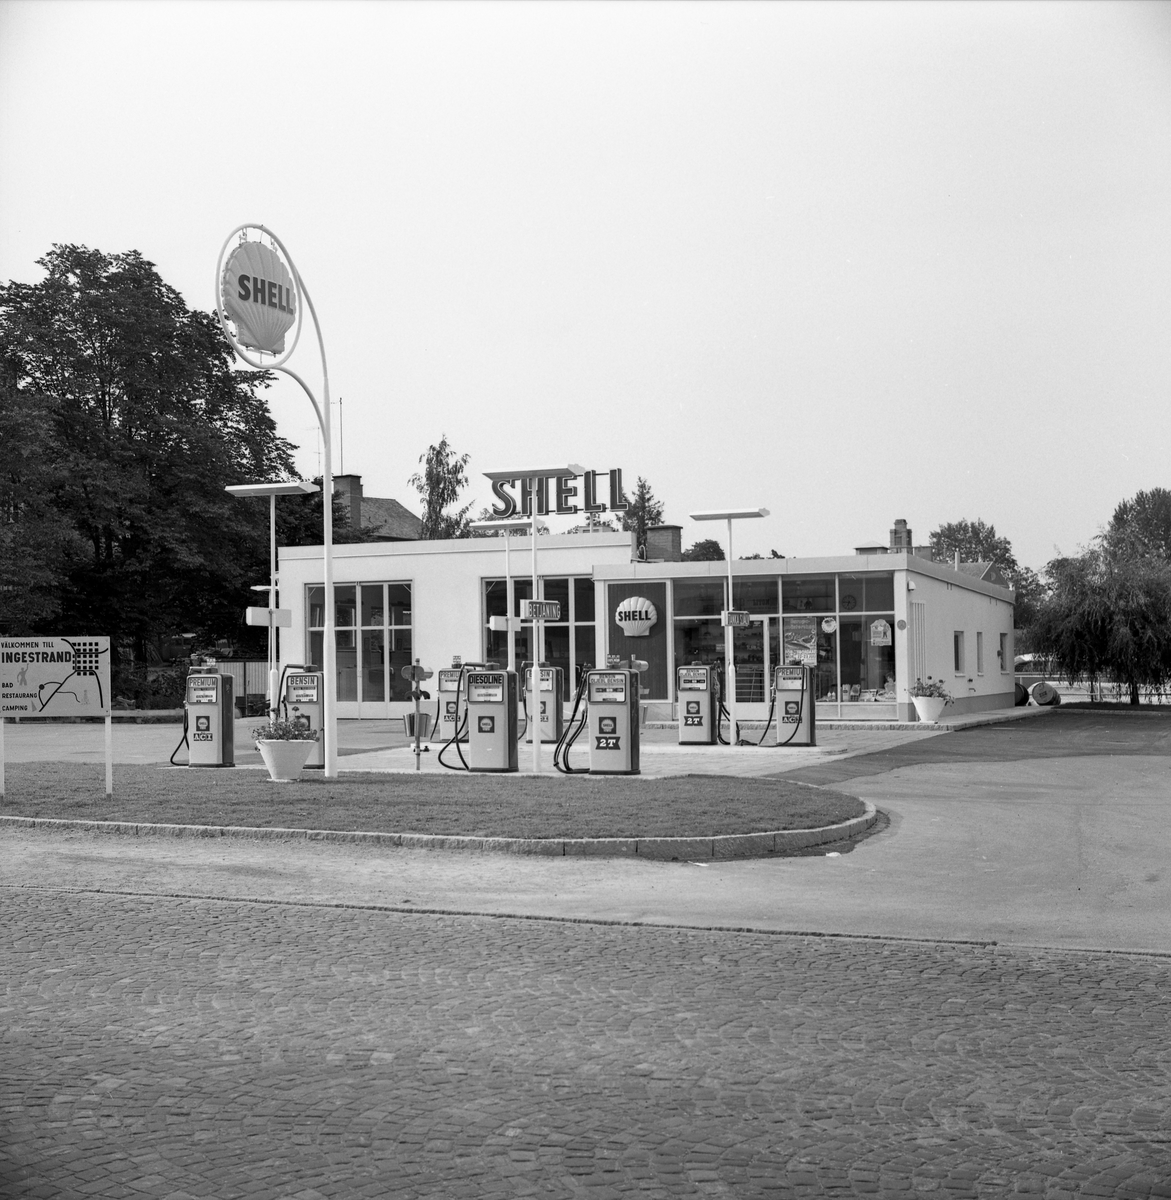 Shells bensinstation i mitten av juli år 1961. Stationen låg längs den tidigare Kyrkogatan mellan Kyrkogatan/Repslagaregatan och Fallängsvägen (kvarteret Palmen).